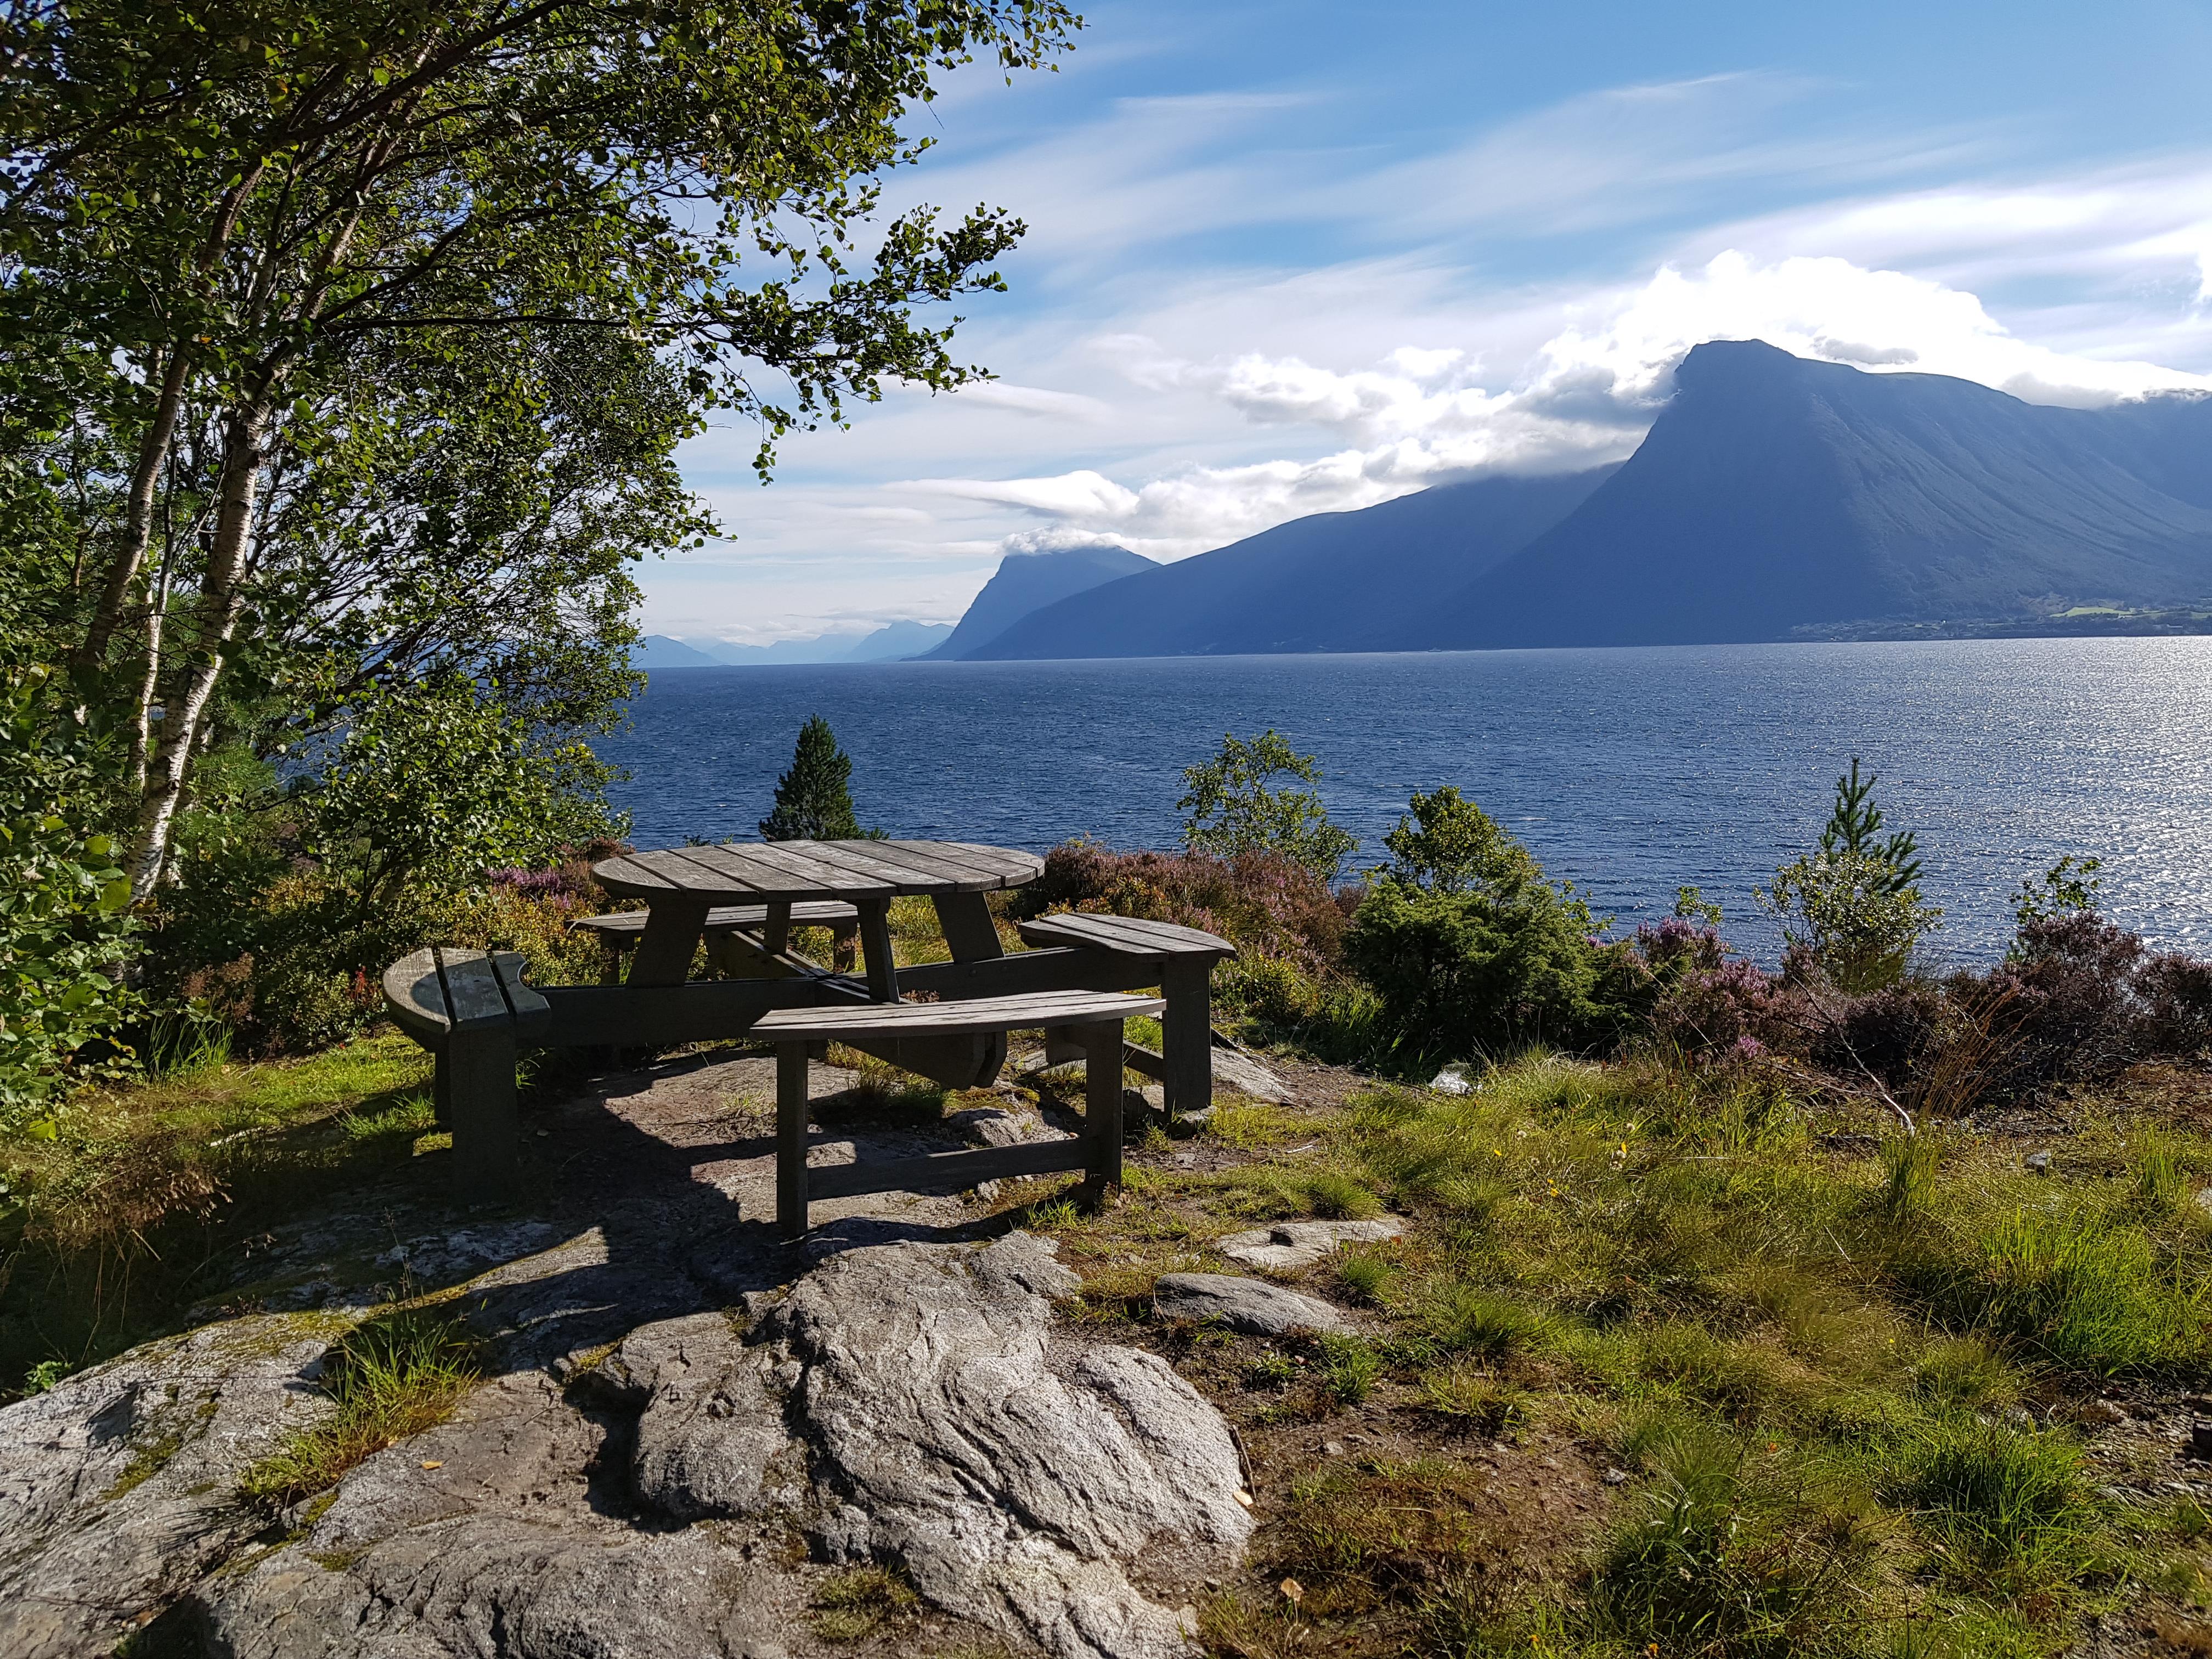 Bilete av parkbenk og bord i naturen med utsikt til fjord og fjell